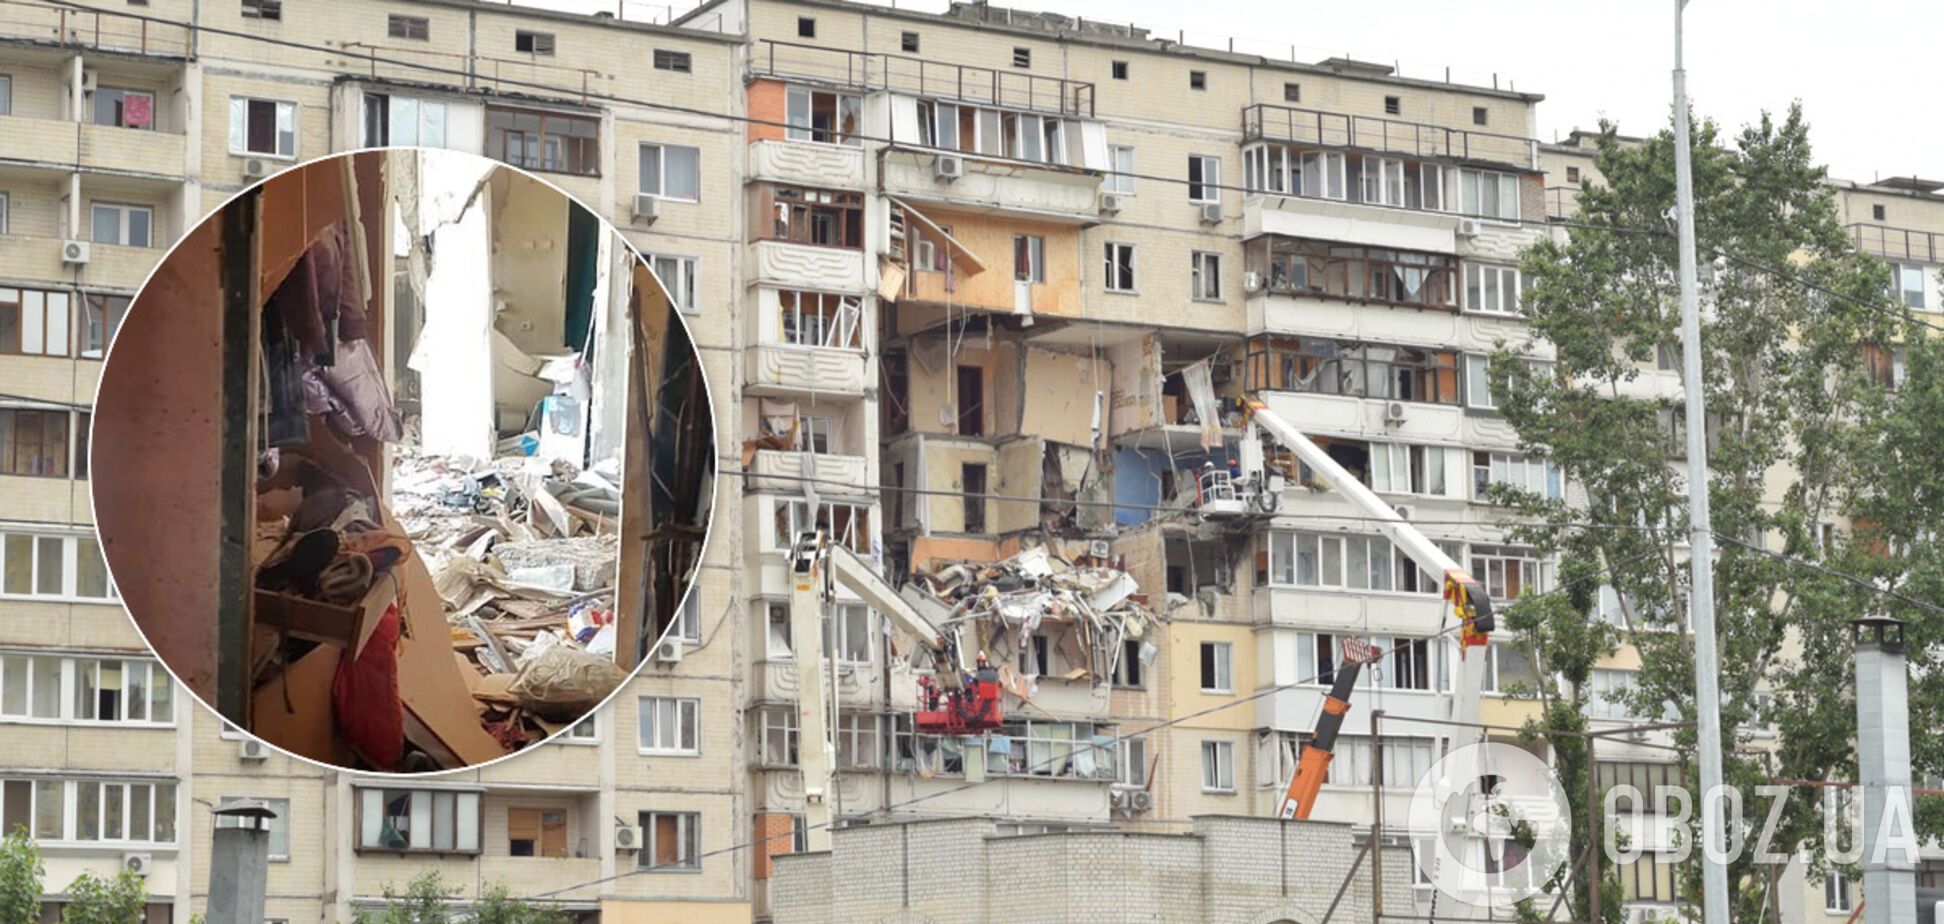 Появились фото изнутри взорвавшейся в Киеве многоэтажки